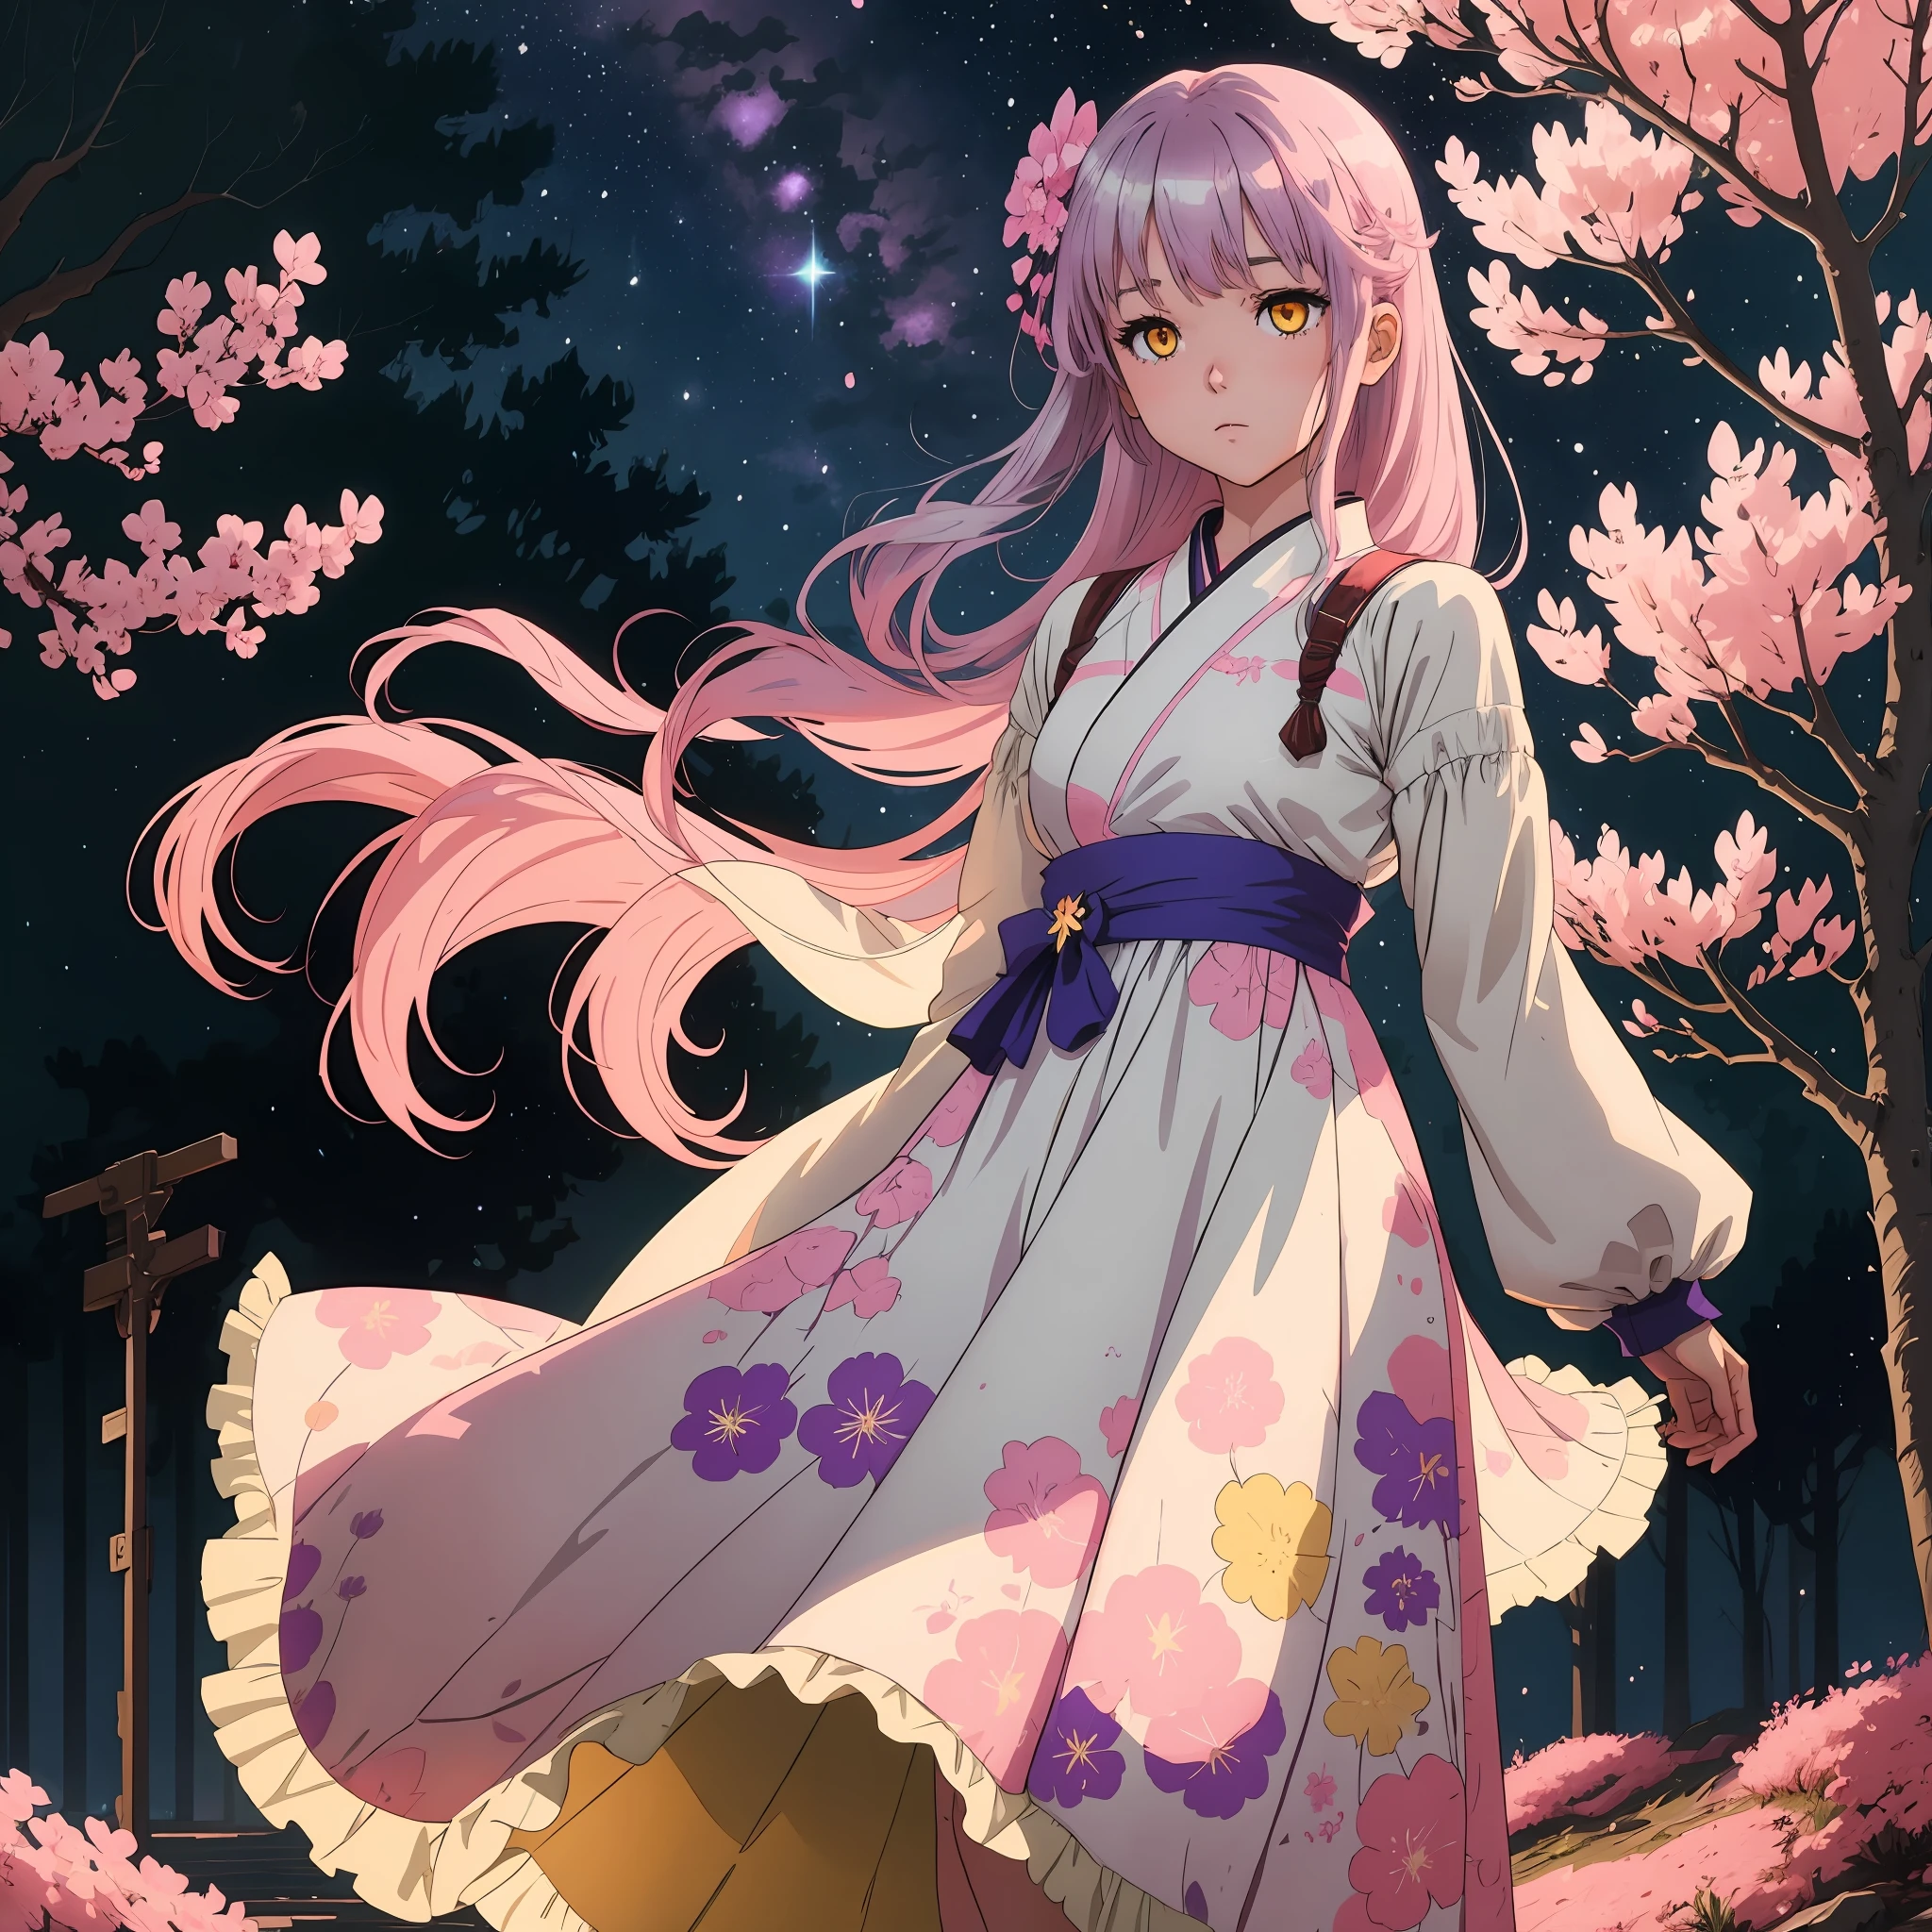 Ein silberhaariges 2D-Anime-Mädchen mit leuchtend gelben Augen und rosa Sakura im Haar trägt ein flauschiges Lavendelkleid und steht ganz allein unter dem Sternenhimmel, umgeben von Sakura-Bäumen.